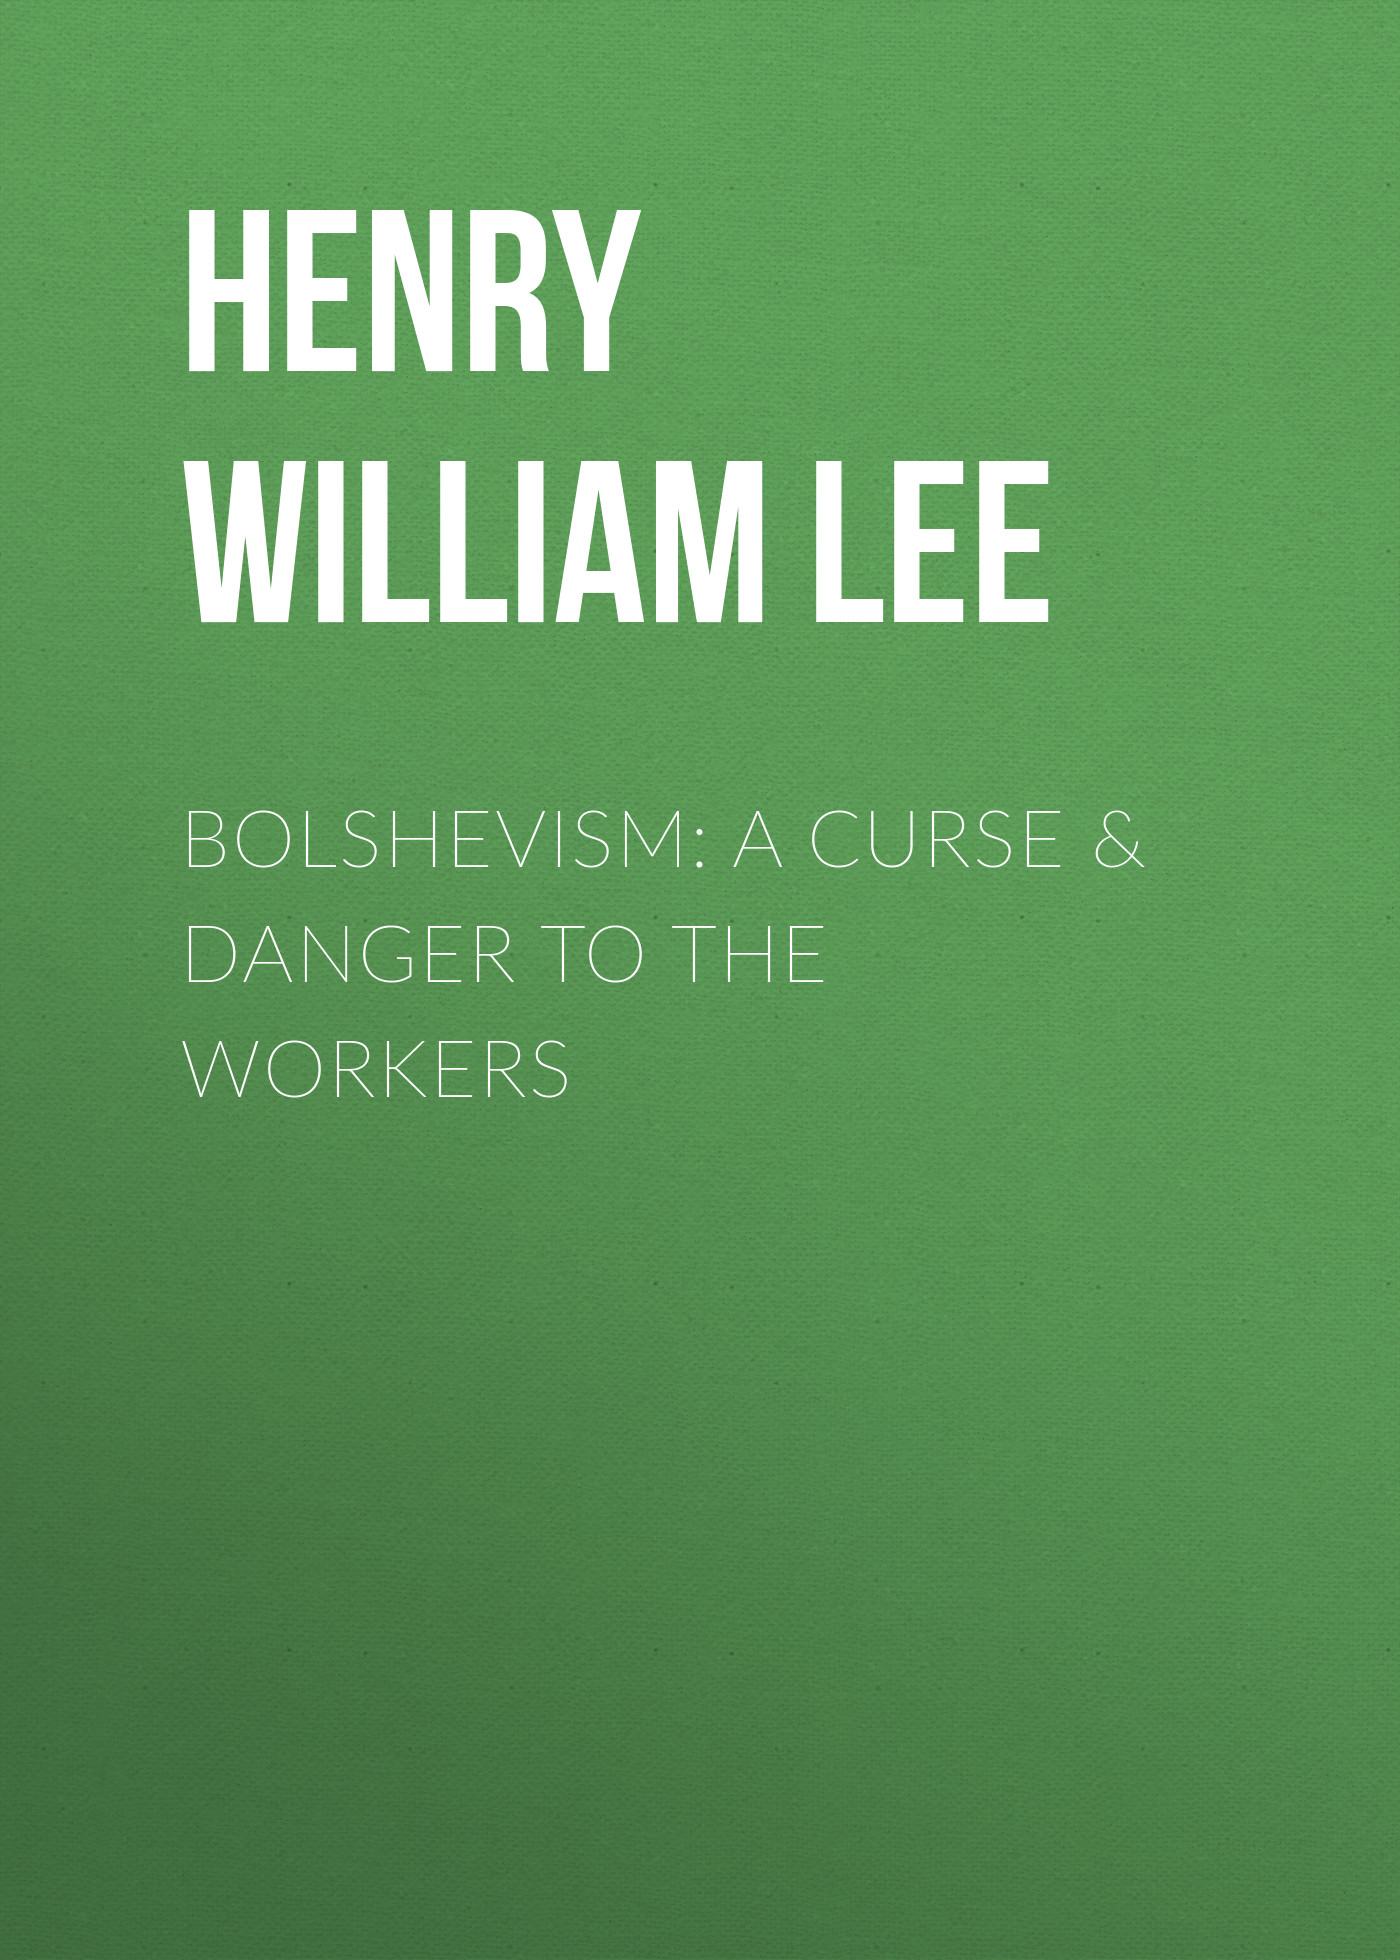 Книга Bolshevism: A Curse & Danger to the Workers из серии , созданная Henry William Lee, может относится к жанру Зарубежная классика, Зарубежная старинная литература. Стоимость электронной книги Bolshevism: A Curse & Danger to the Workers с идентификатором 41260860 составляет 0 руб.